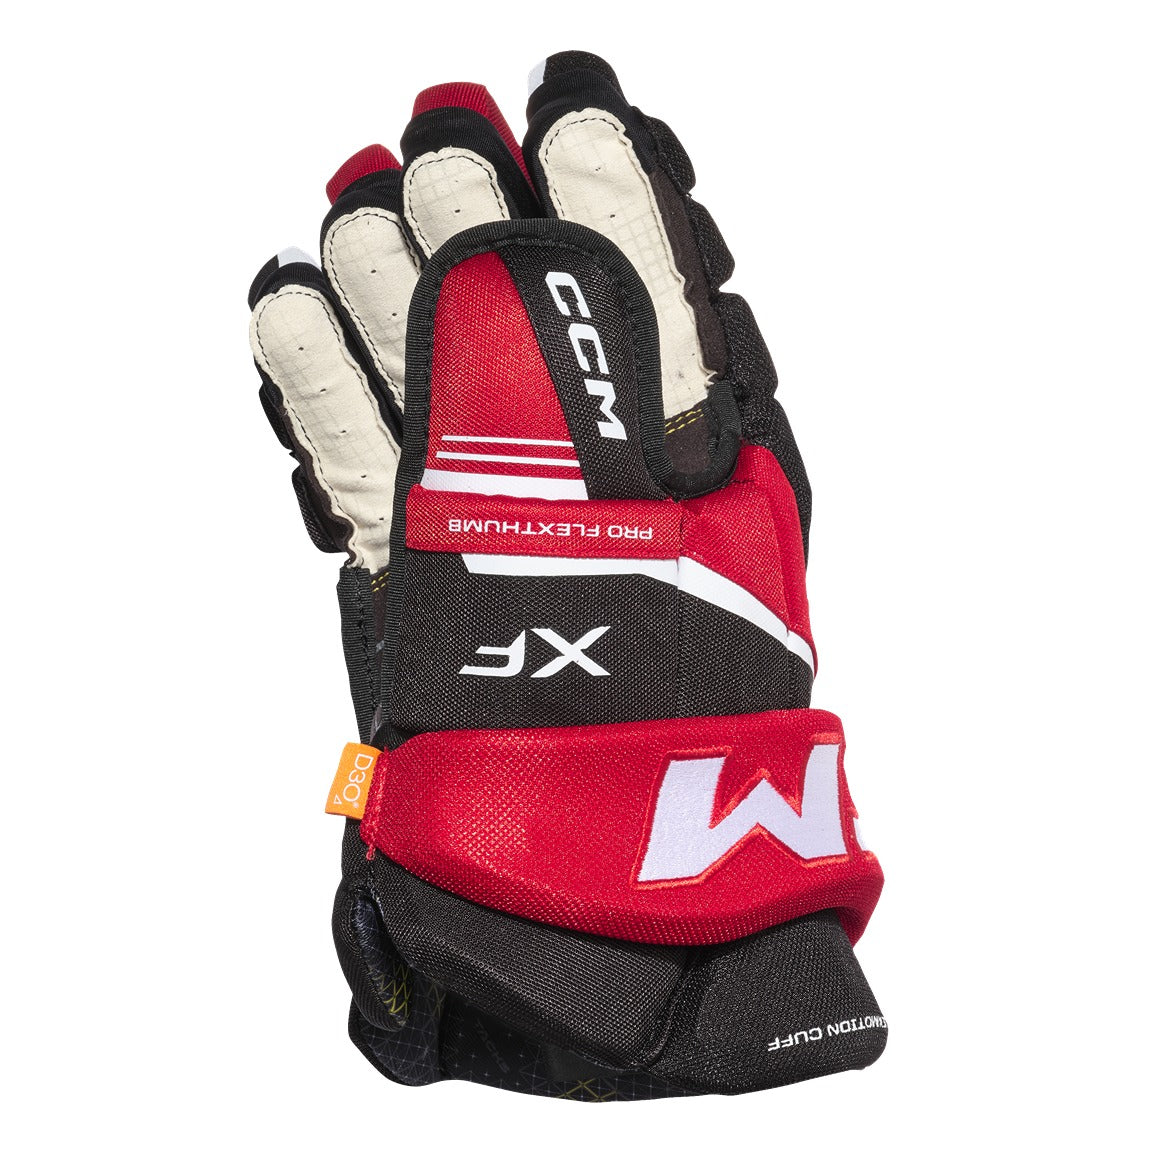 CCM Tacks XF Hockey Gloves - Senior